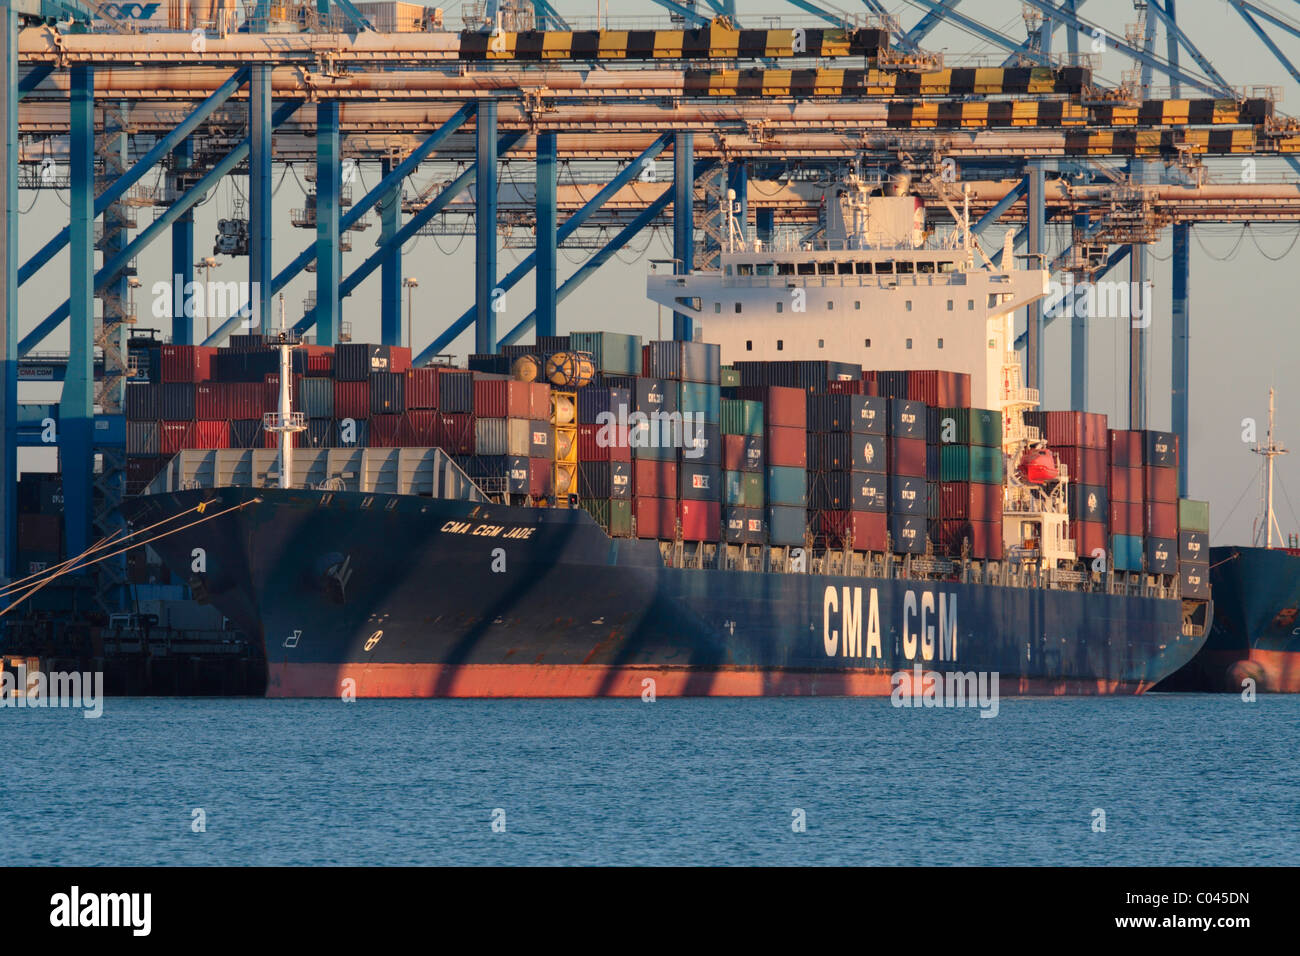 Commercio internazionale via mare il trasporto. La nave portacontainer CMA CGM Jade a Malta Freeport Foto Stock